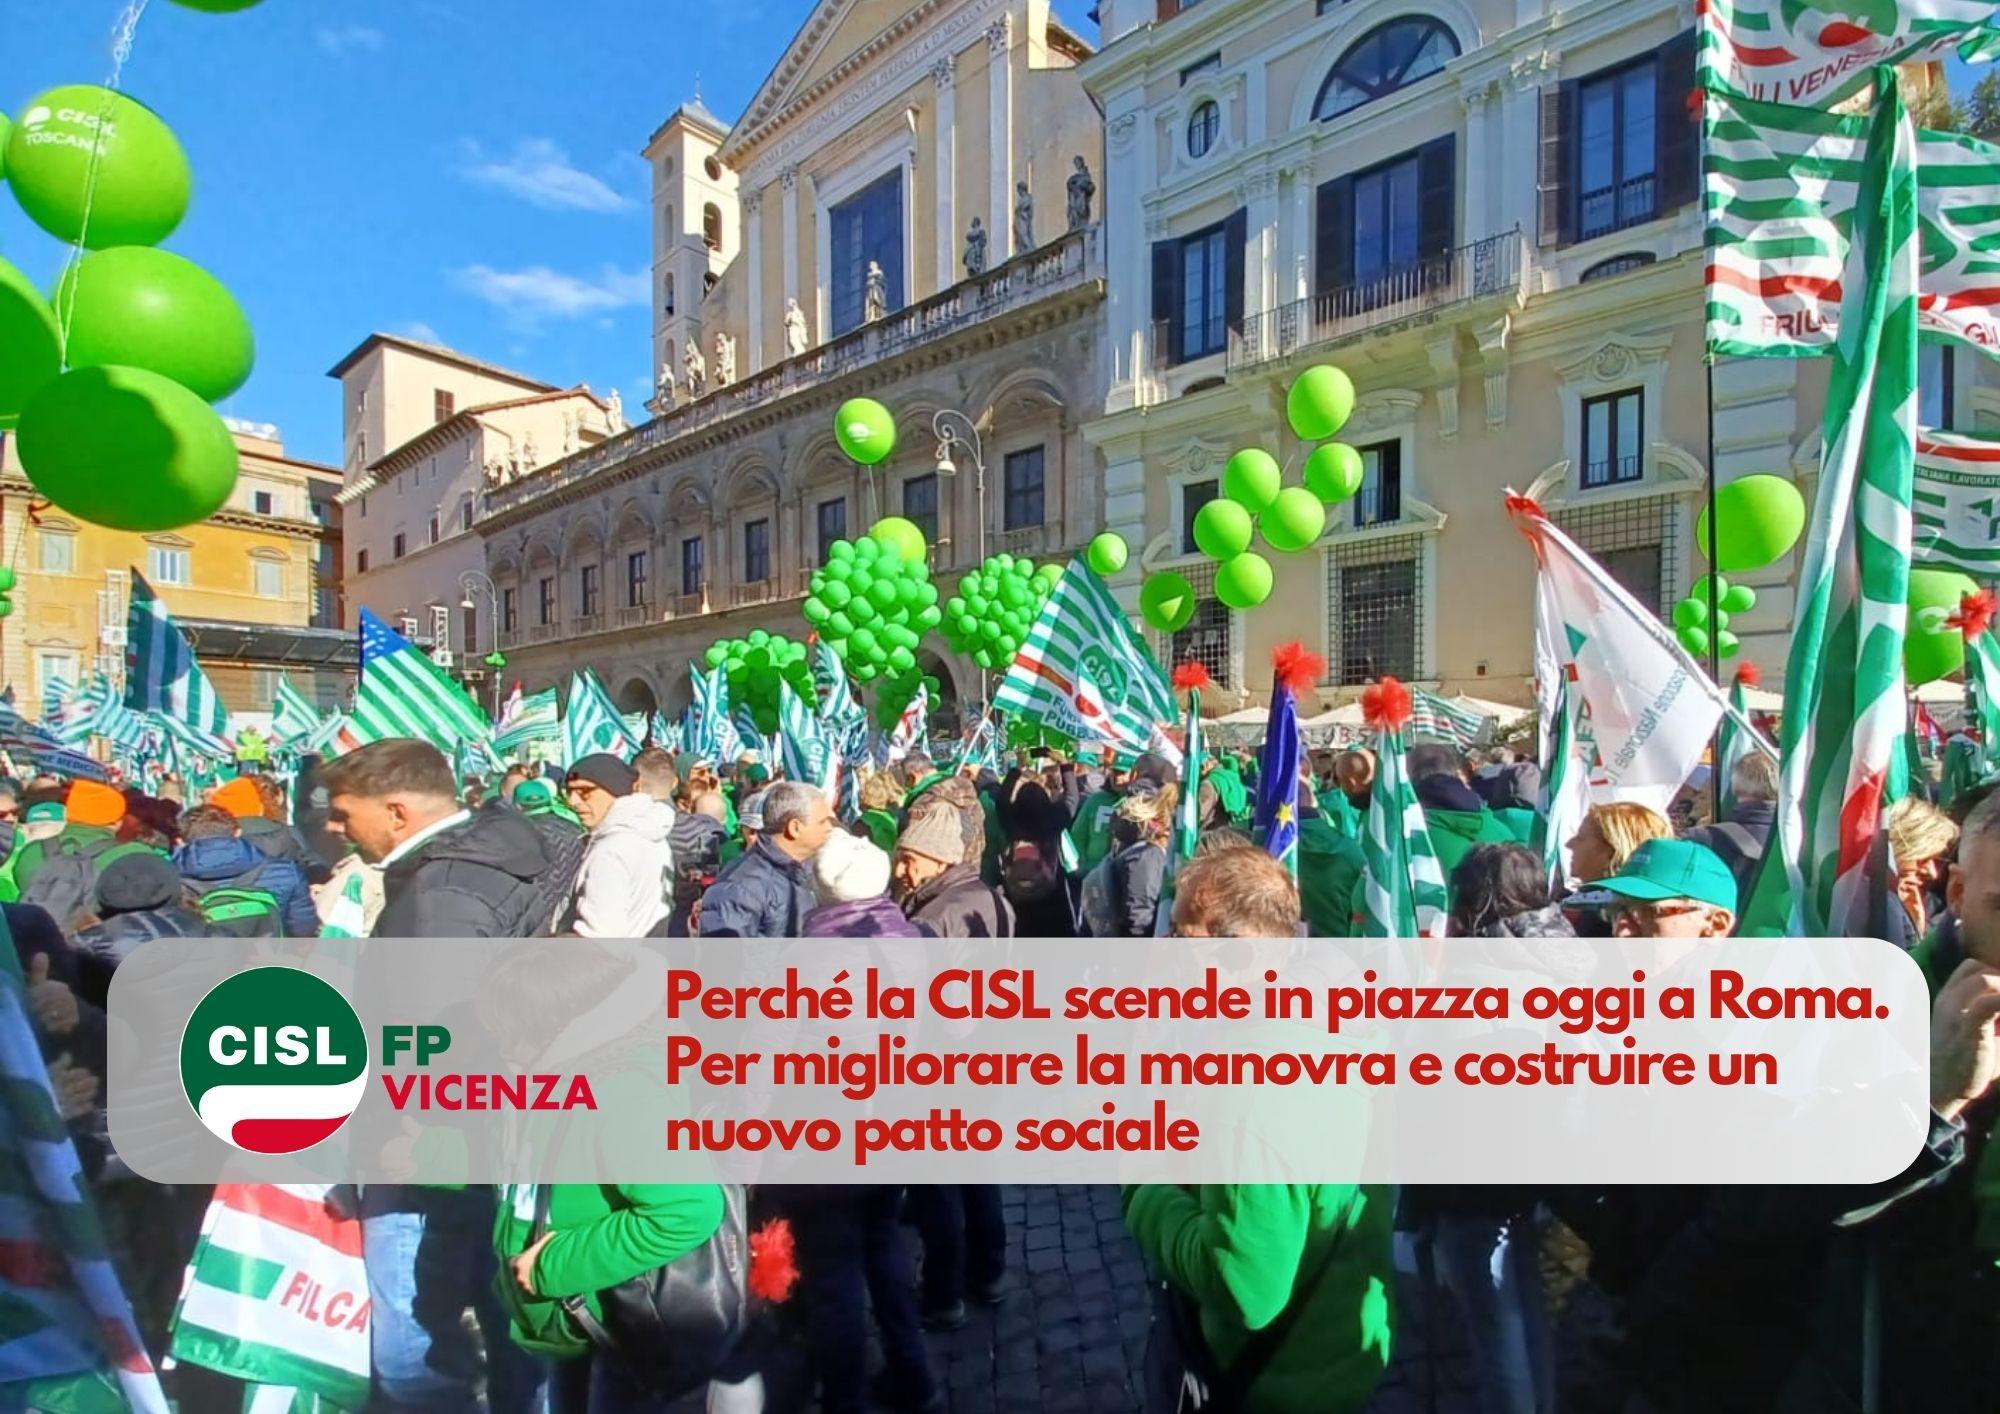 CISL FP Vicenza. Perché la CISL scende in piazza oggi a Roma. Per migliorare la manovra e costruire un nuovo patto sociale